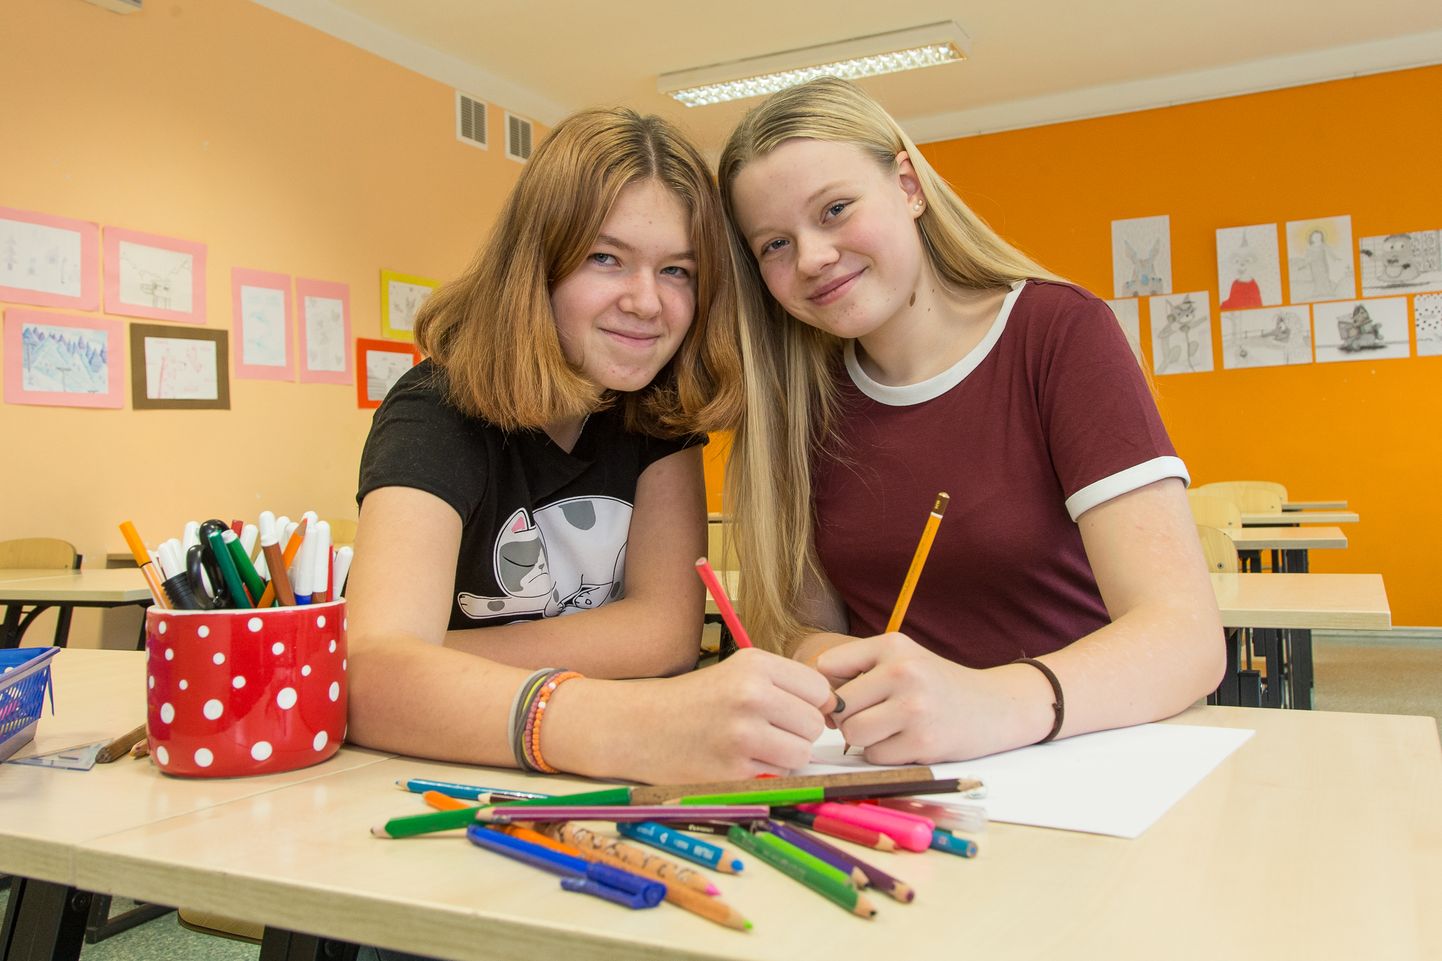 Marilin-Victoria Lindvest ja Kamille Kippar mõtlesid välja matemaatika äratuskella.  MATTI KÄMÄRÄ